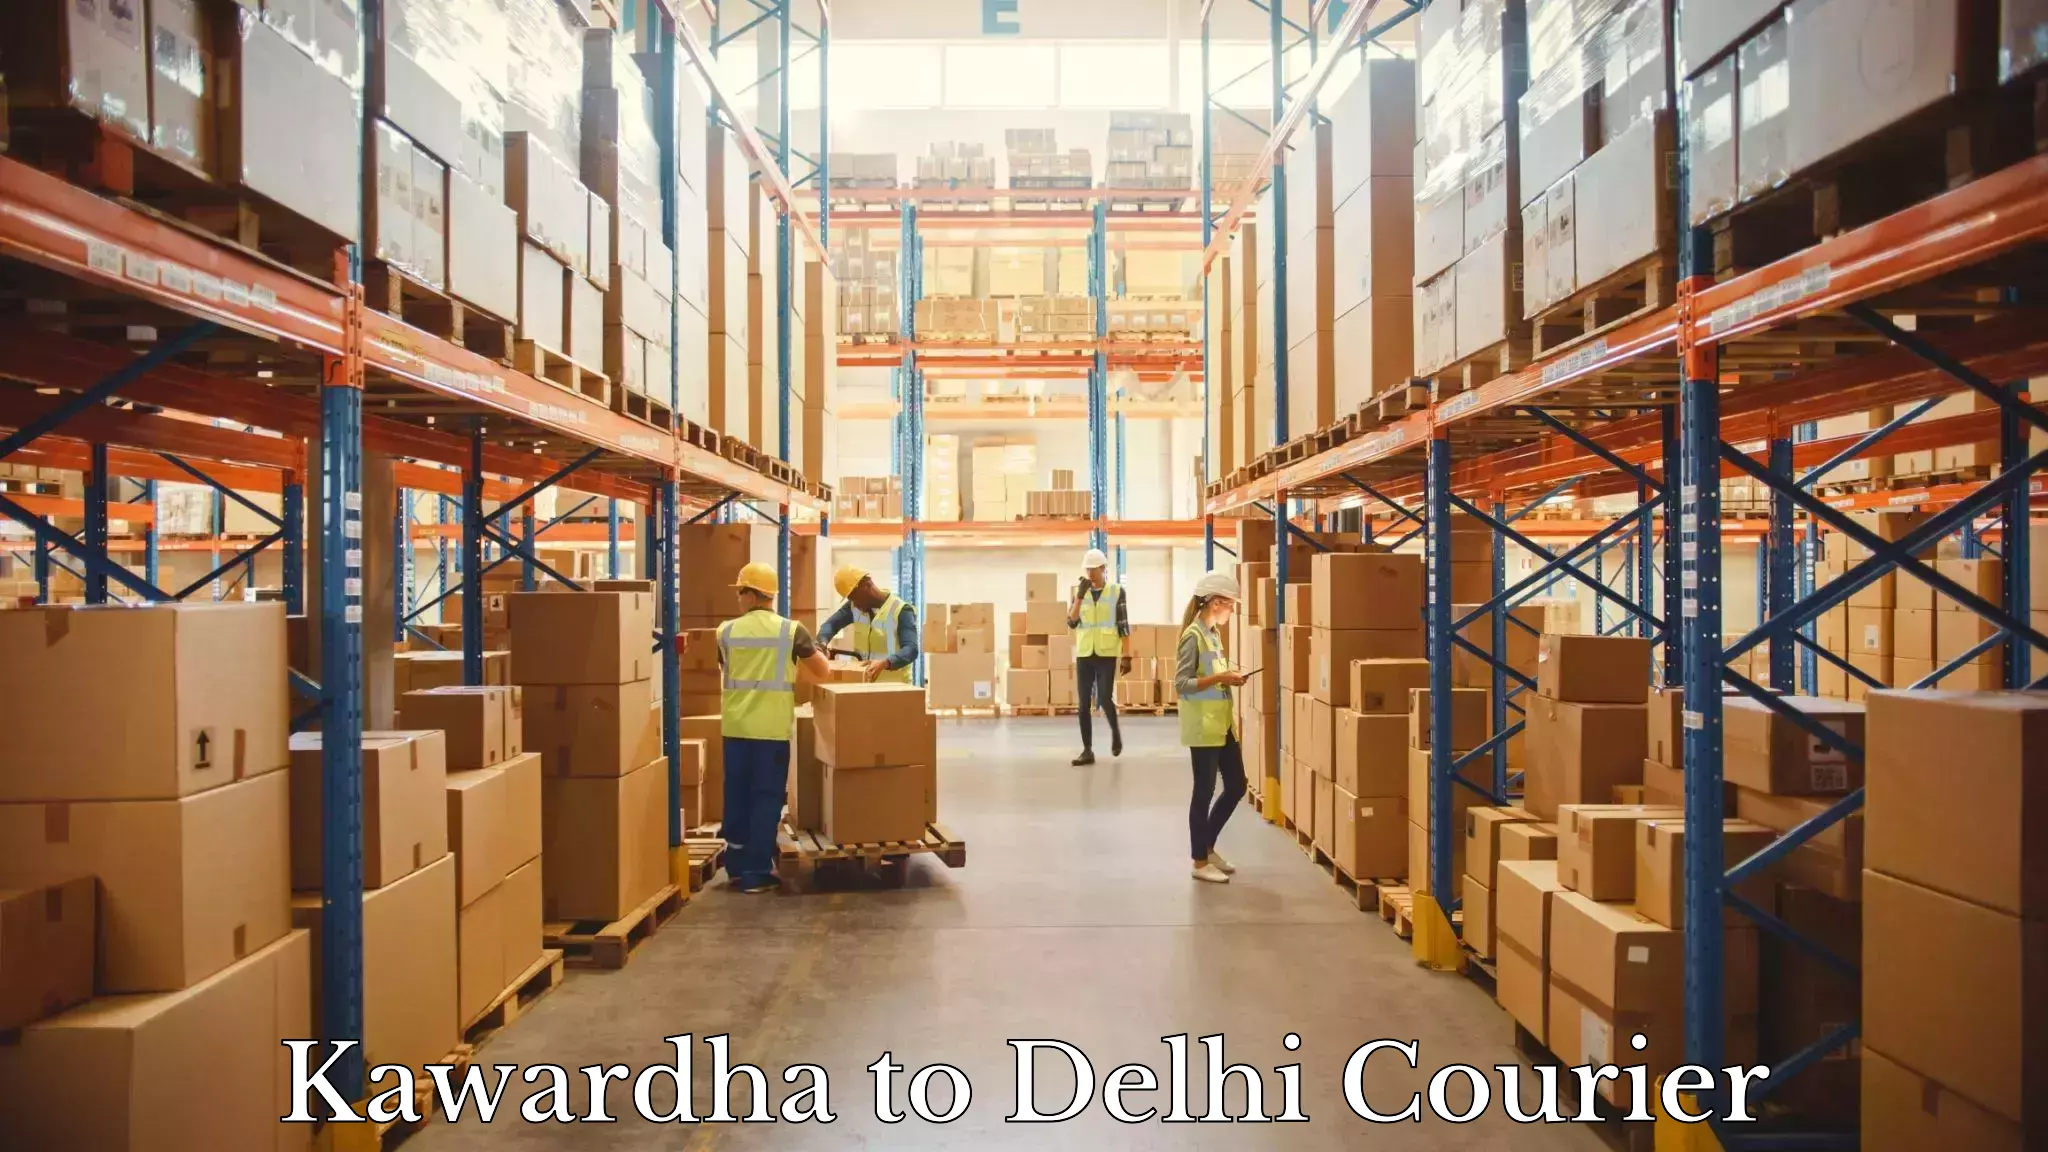 Express courier capabilities Kawardha to Jamia Millia Islamia New Delhi